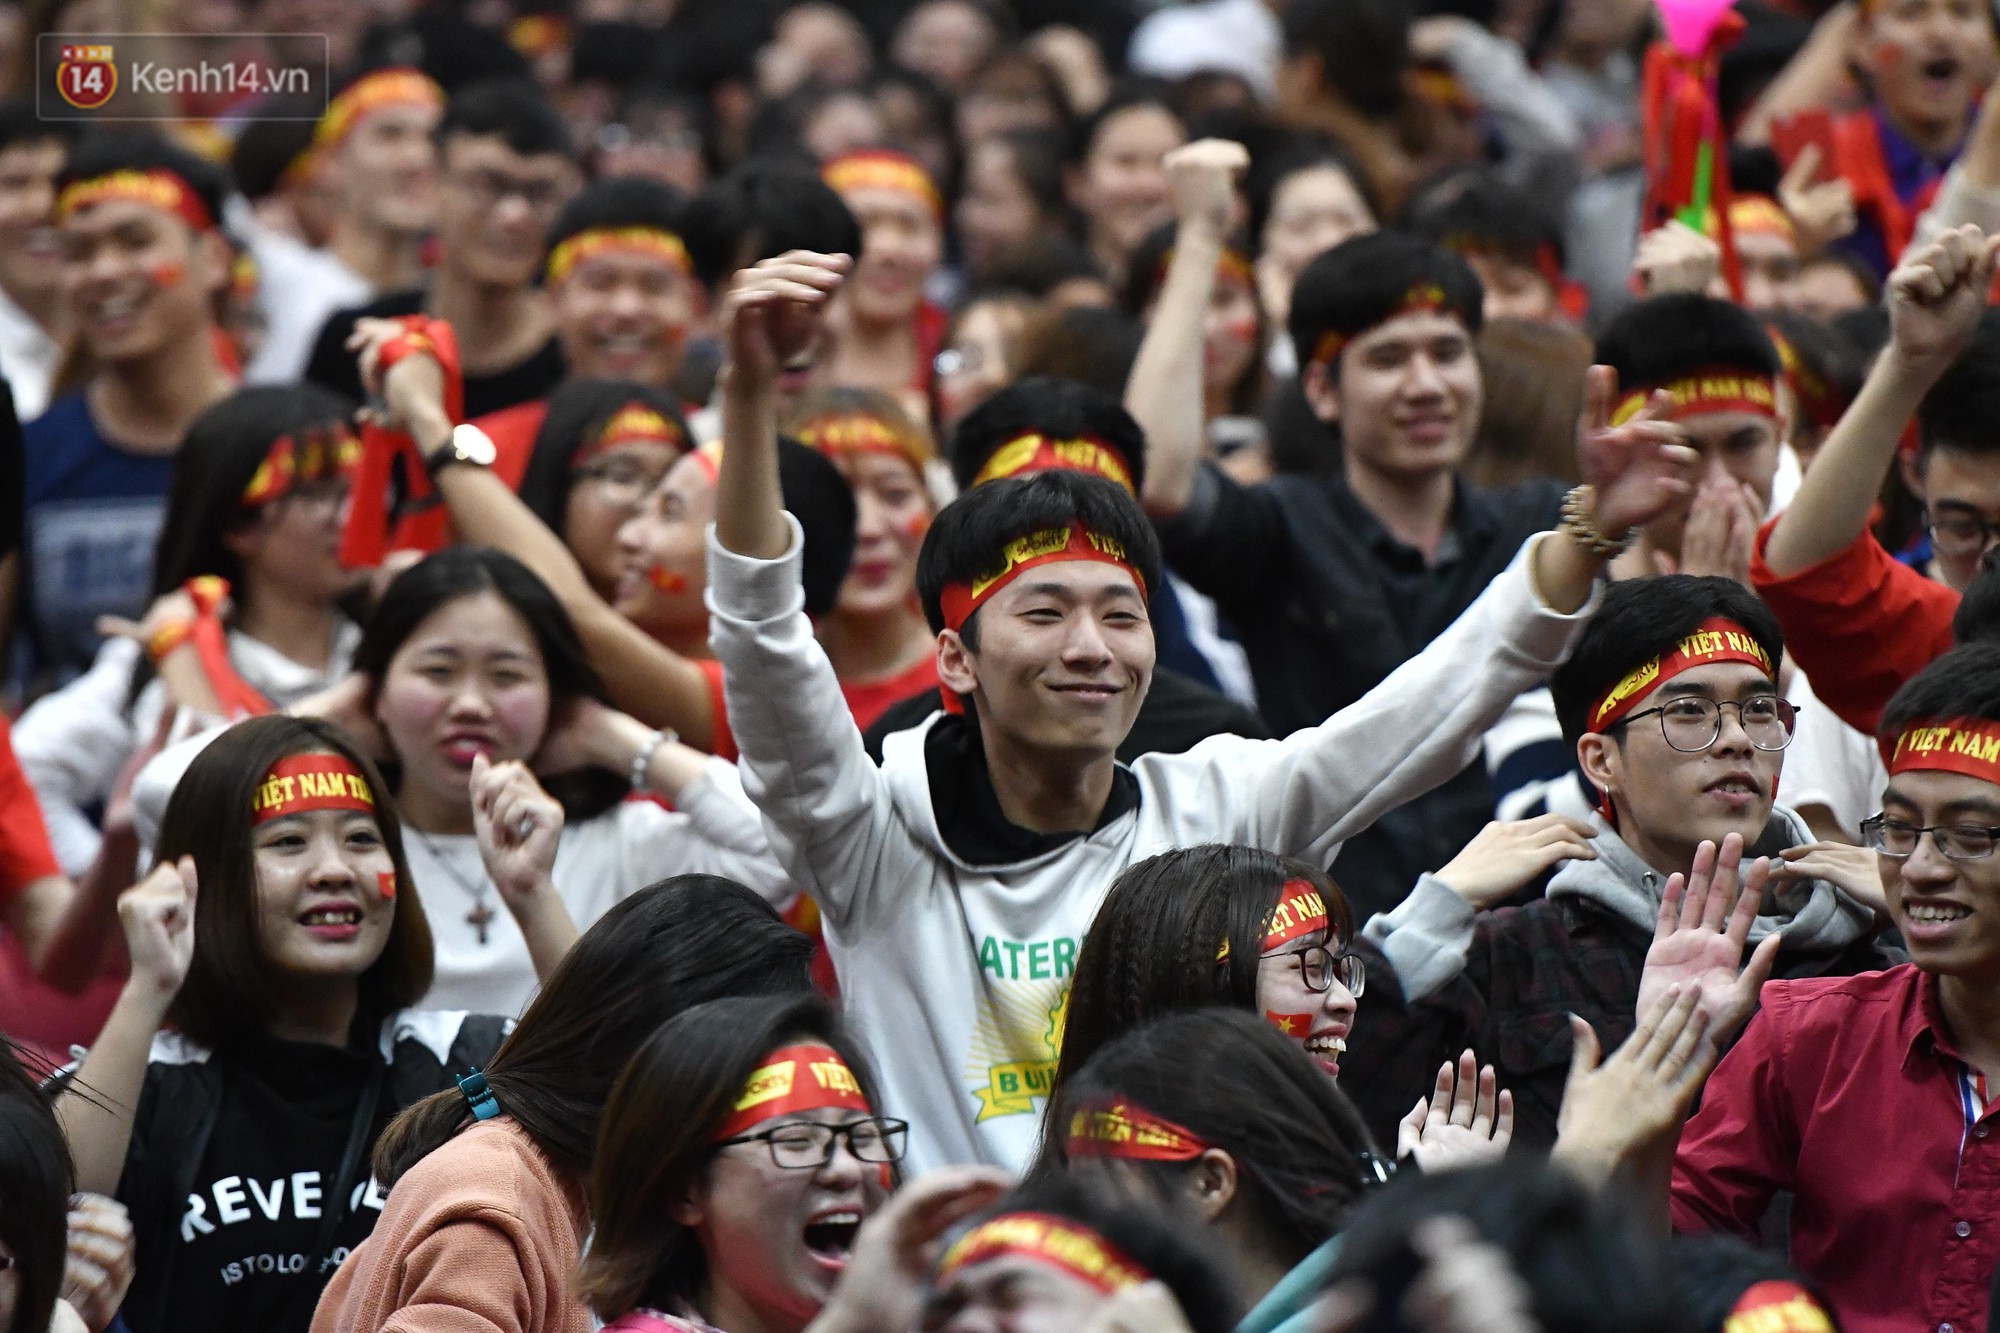 Chùm ảnh: Khoảnh khắc U23 Việt Nam gỡ hòa trong những phút cuối, hàng triệu người đã nắm tay, ôm nhau hạnh phúc nhường này - Ảnh 4.